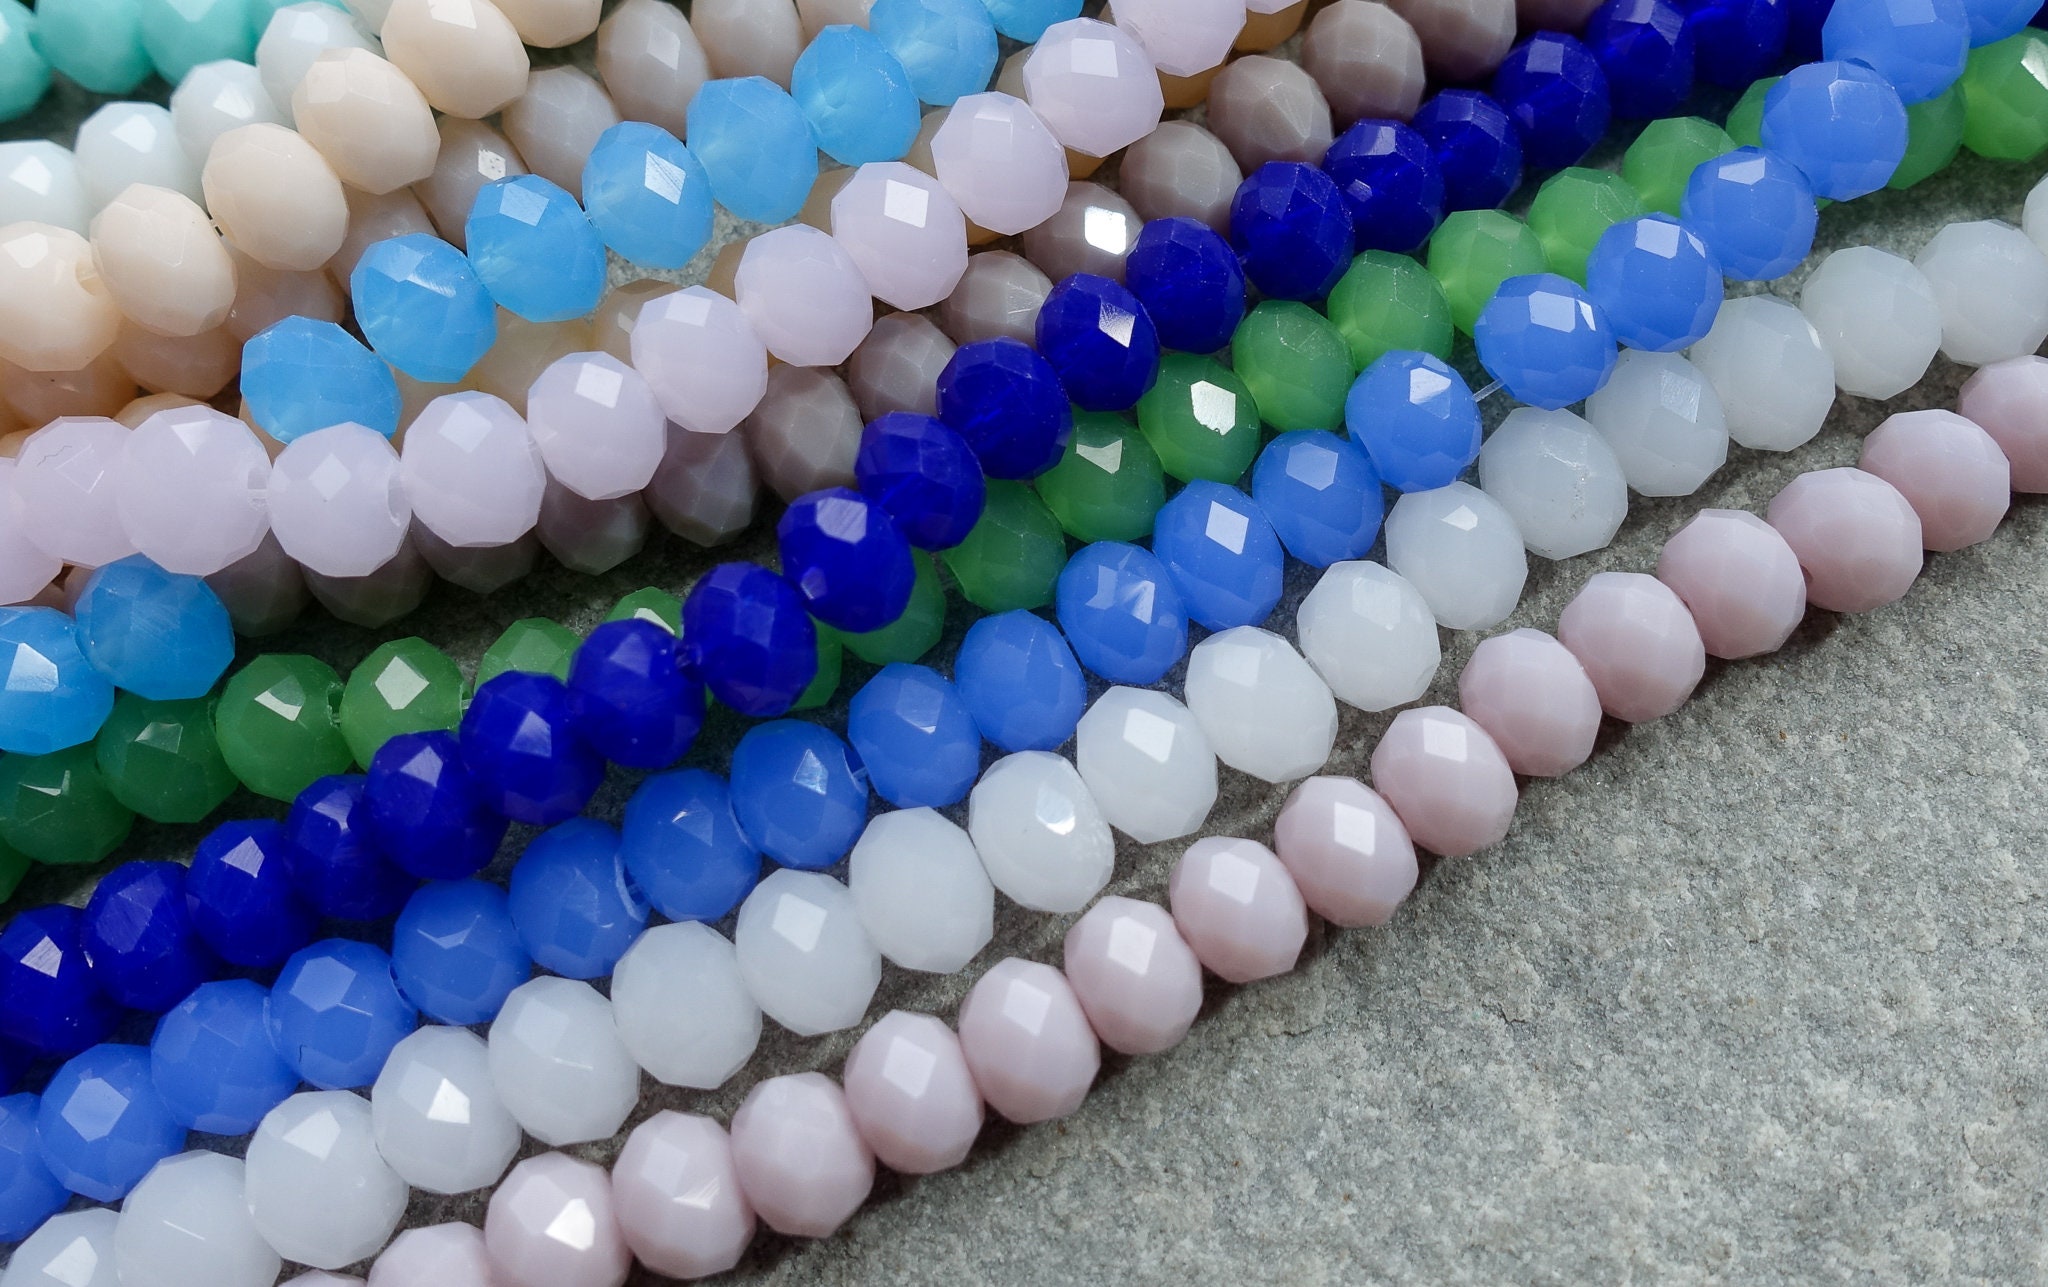 Opaque Seed Beads, Czech Glass, 1000 Glass Beads, Mixed Colors, Size 11/0,  2mm Seed Beads, Tiny Glass Beads, Beading Supplies, UK Shop 